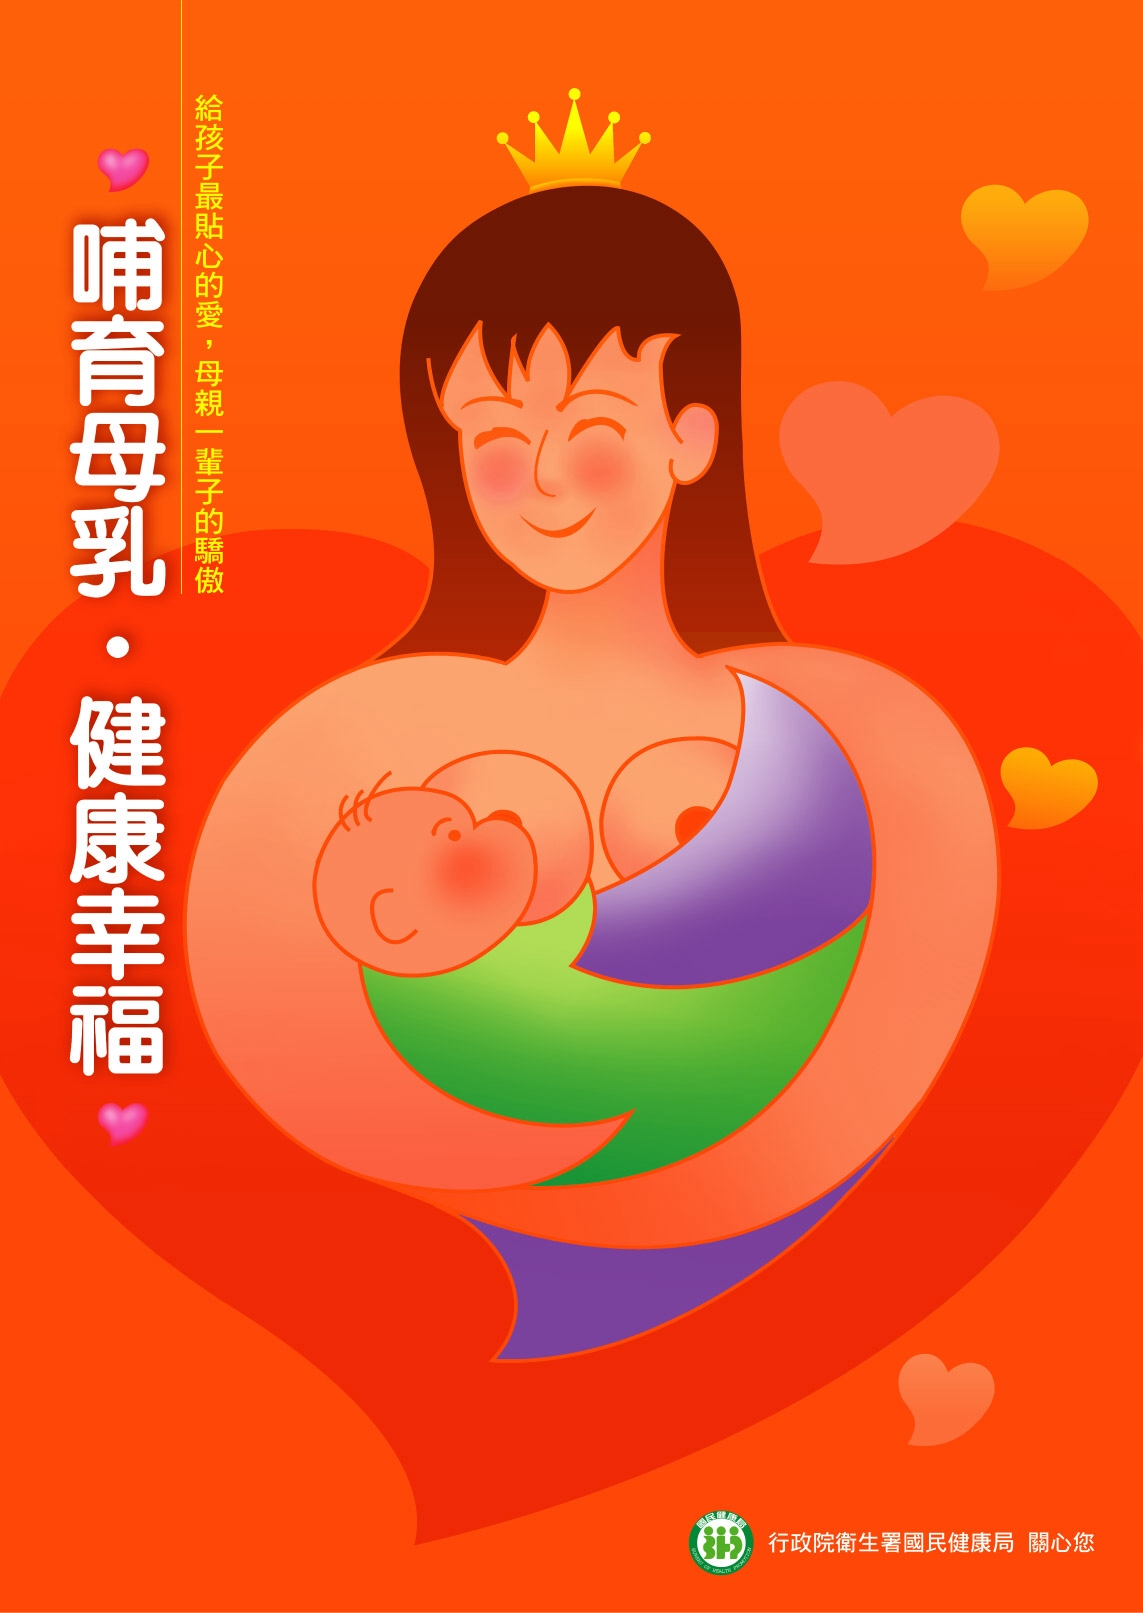 19.哺育母乳，健康幸福